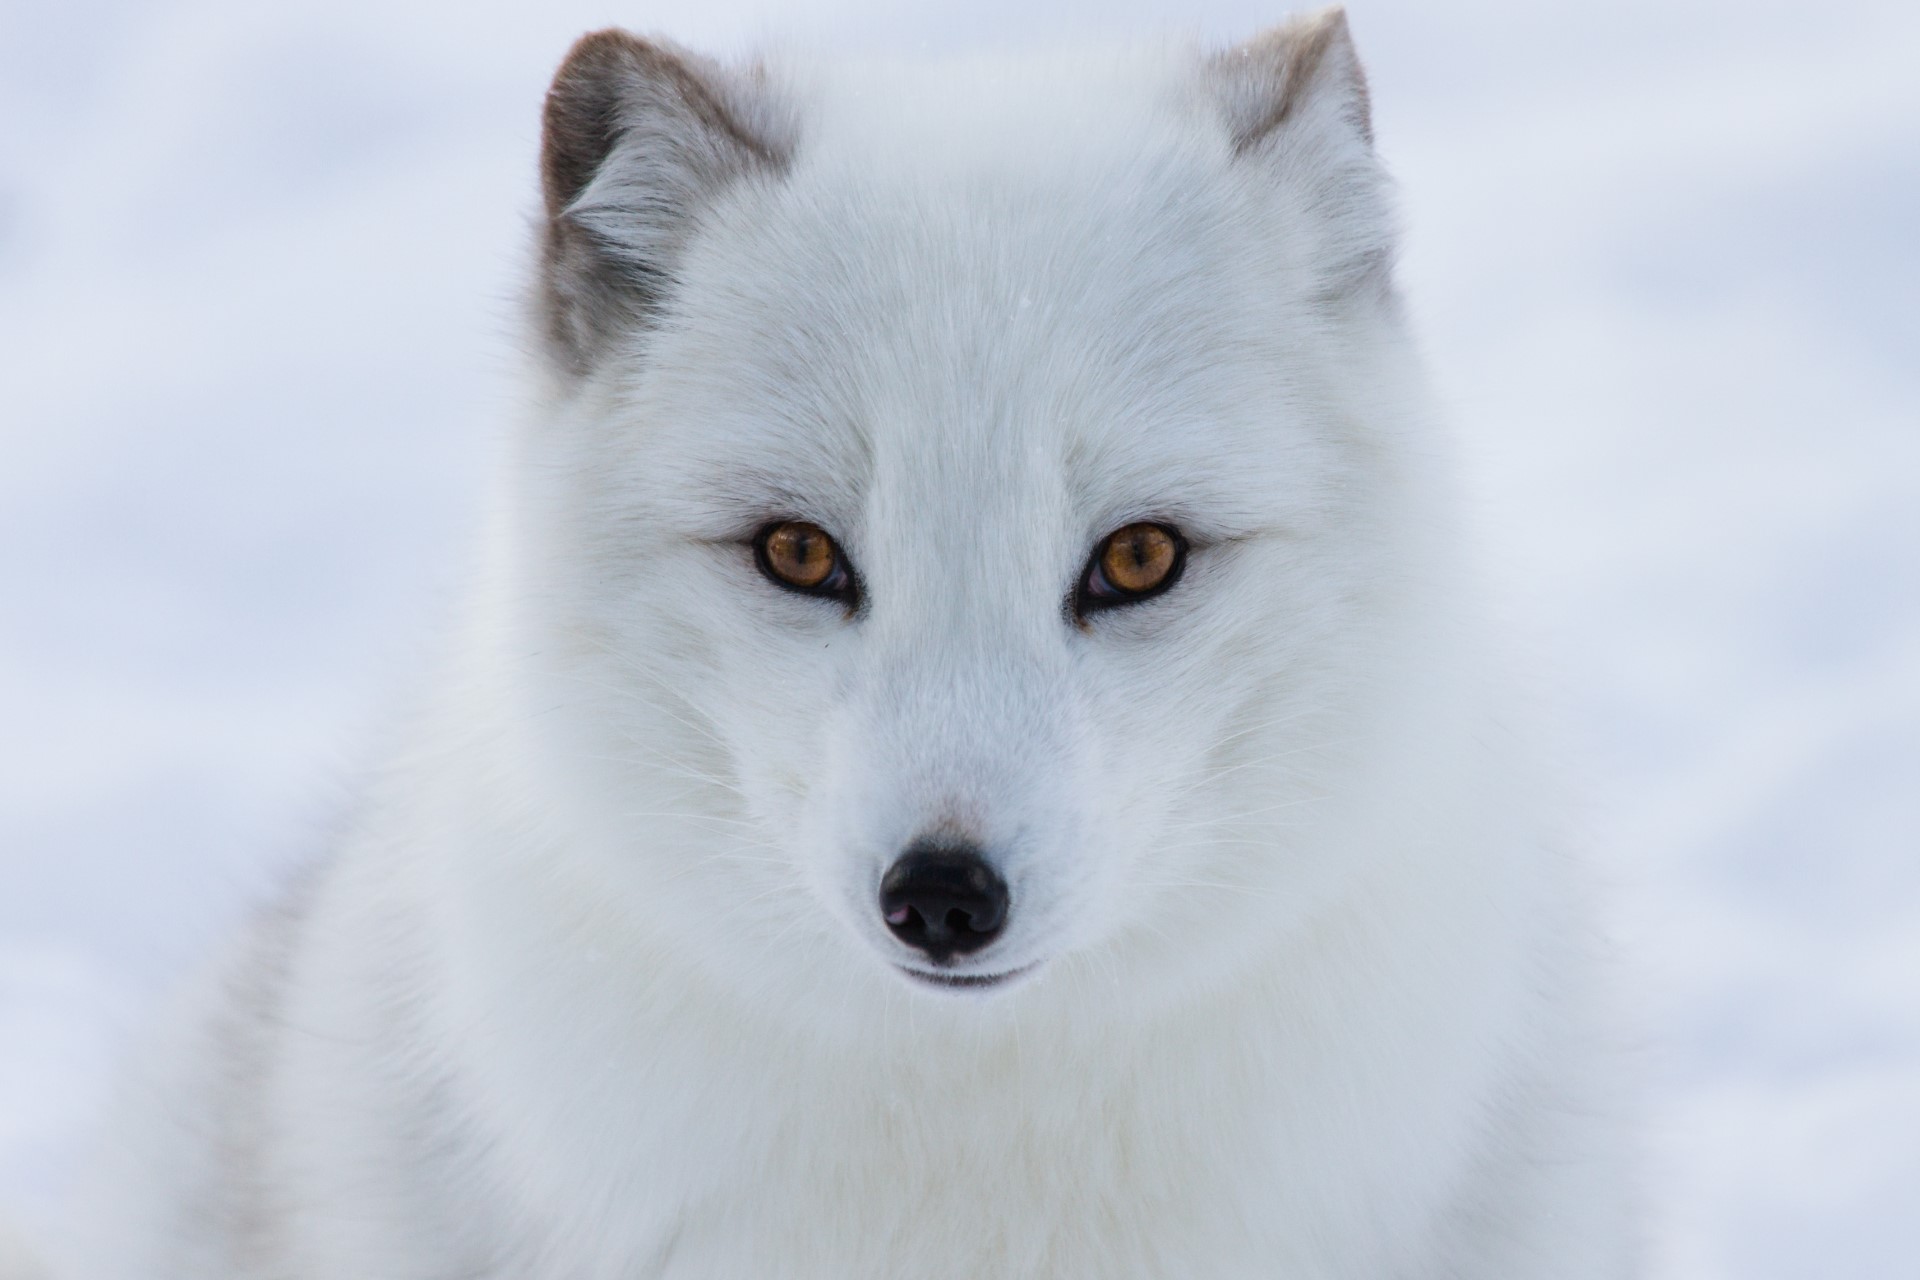 Arctic Fox - Arctic Genomics